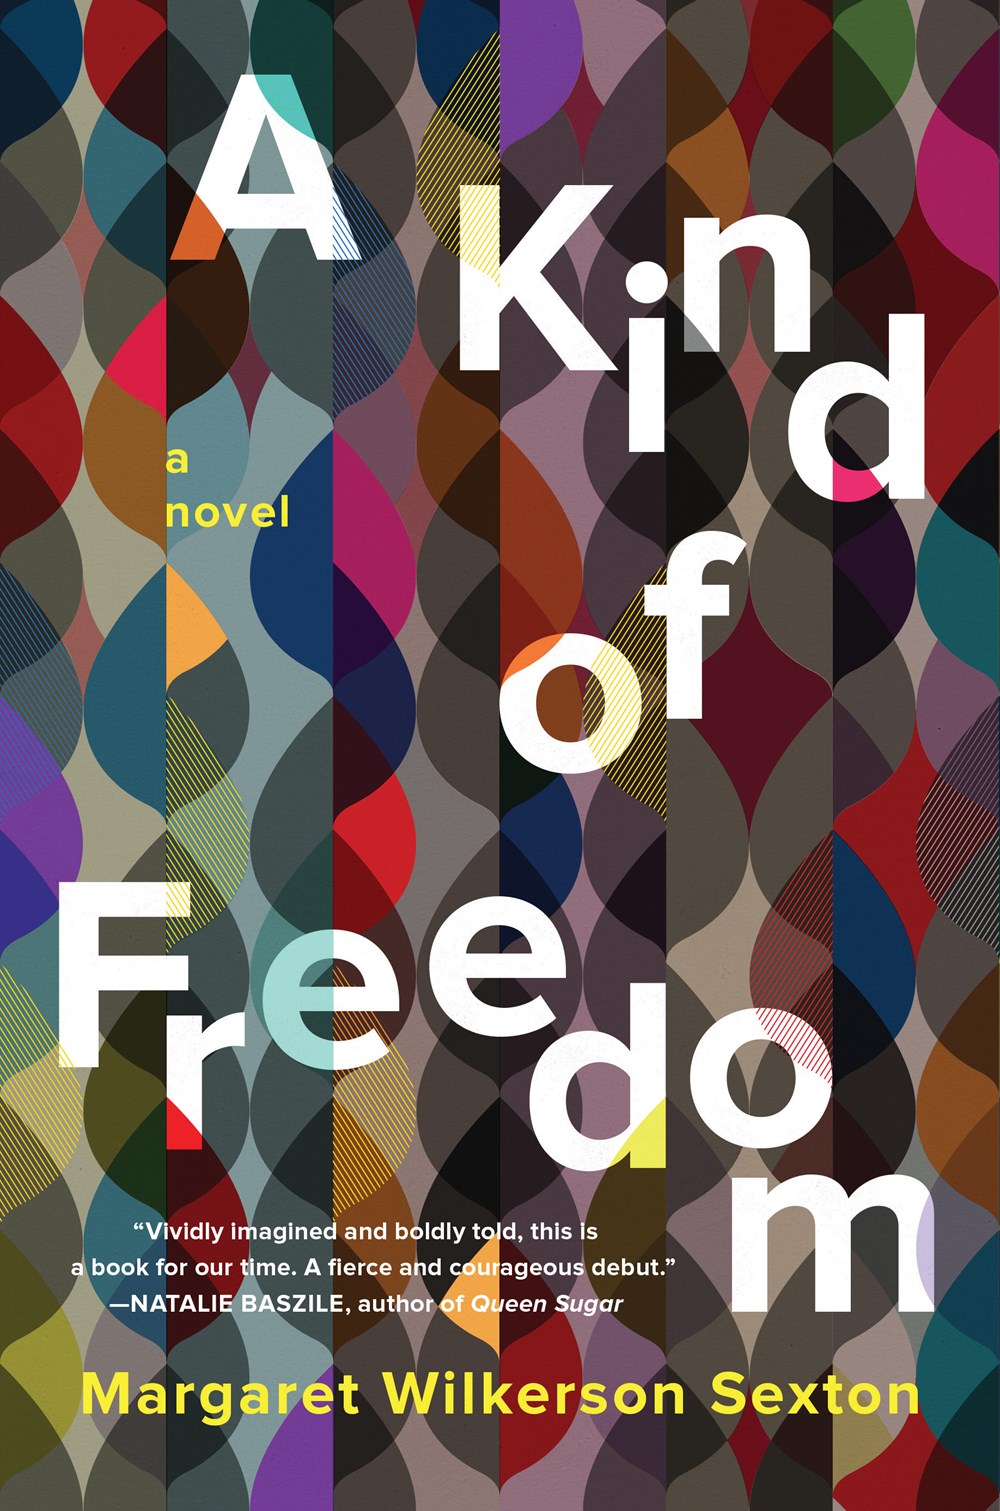 A Kind of Freedom: A Novel